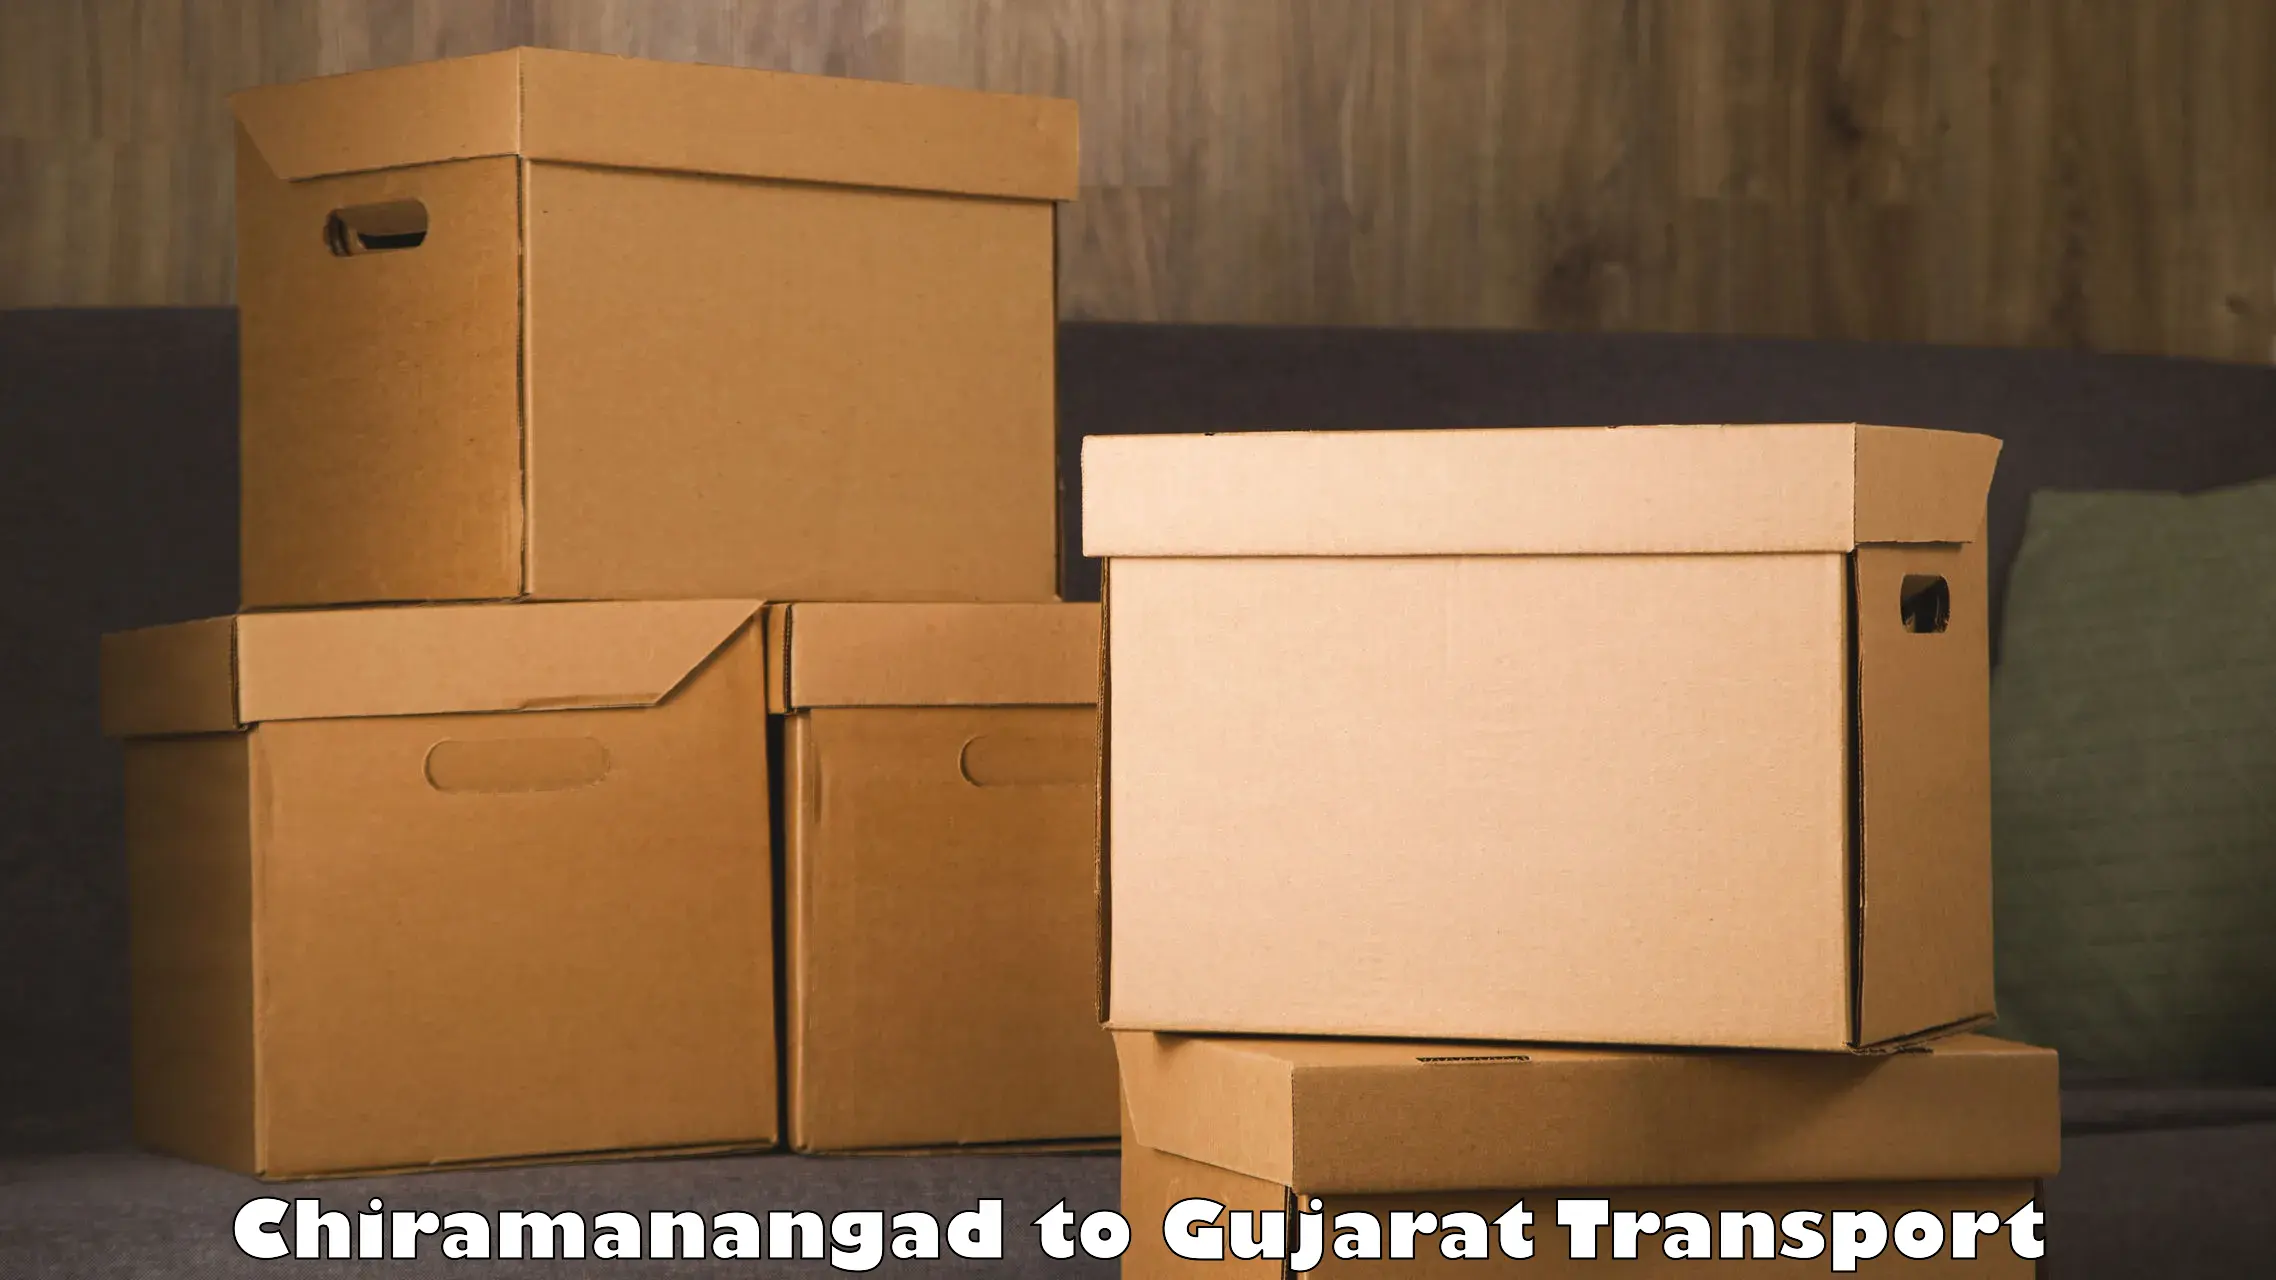 Transport shared services Chiramanangad to Navsari